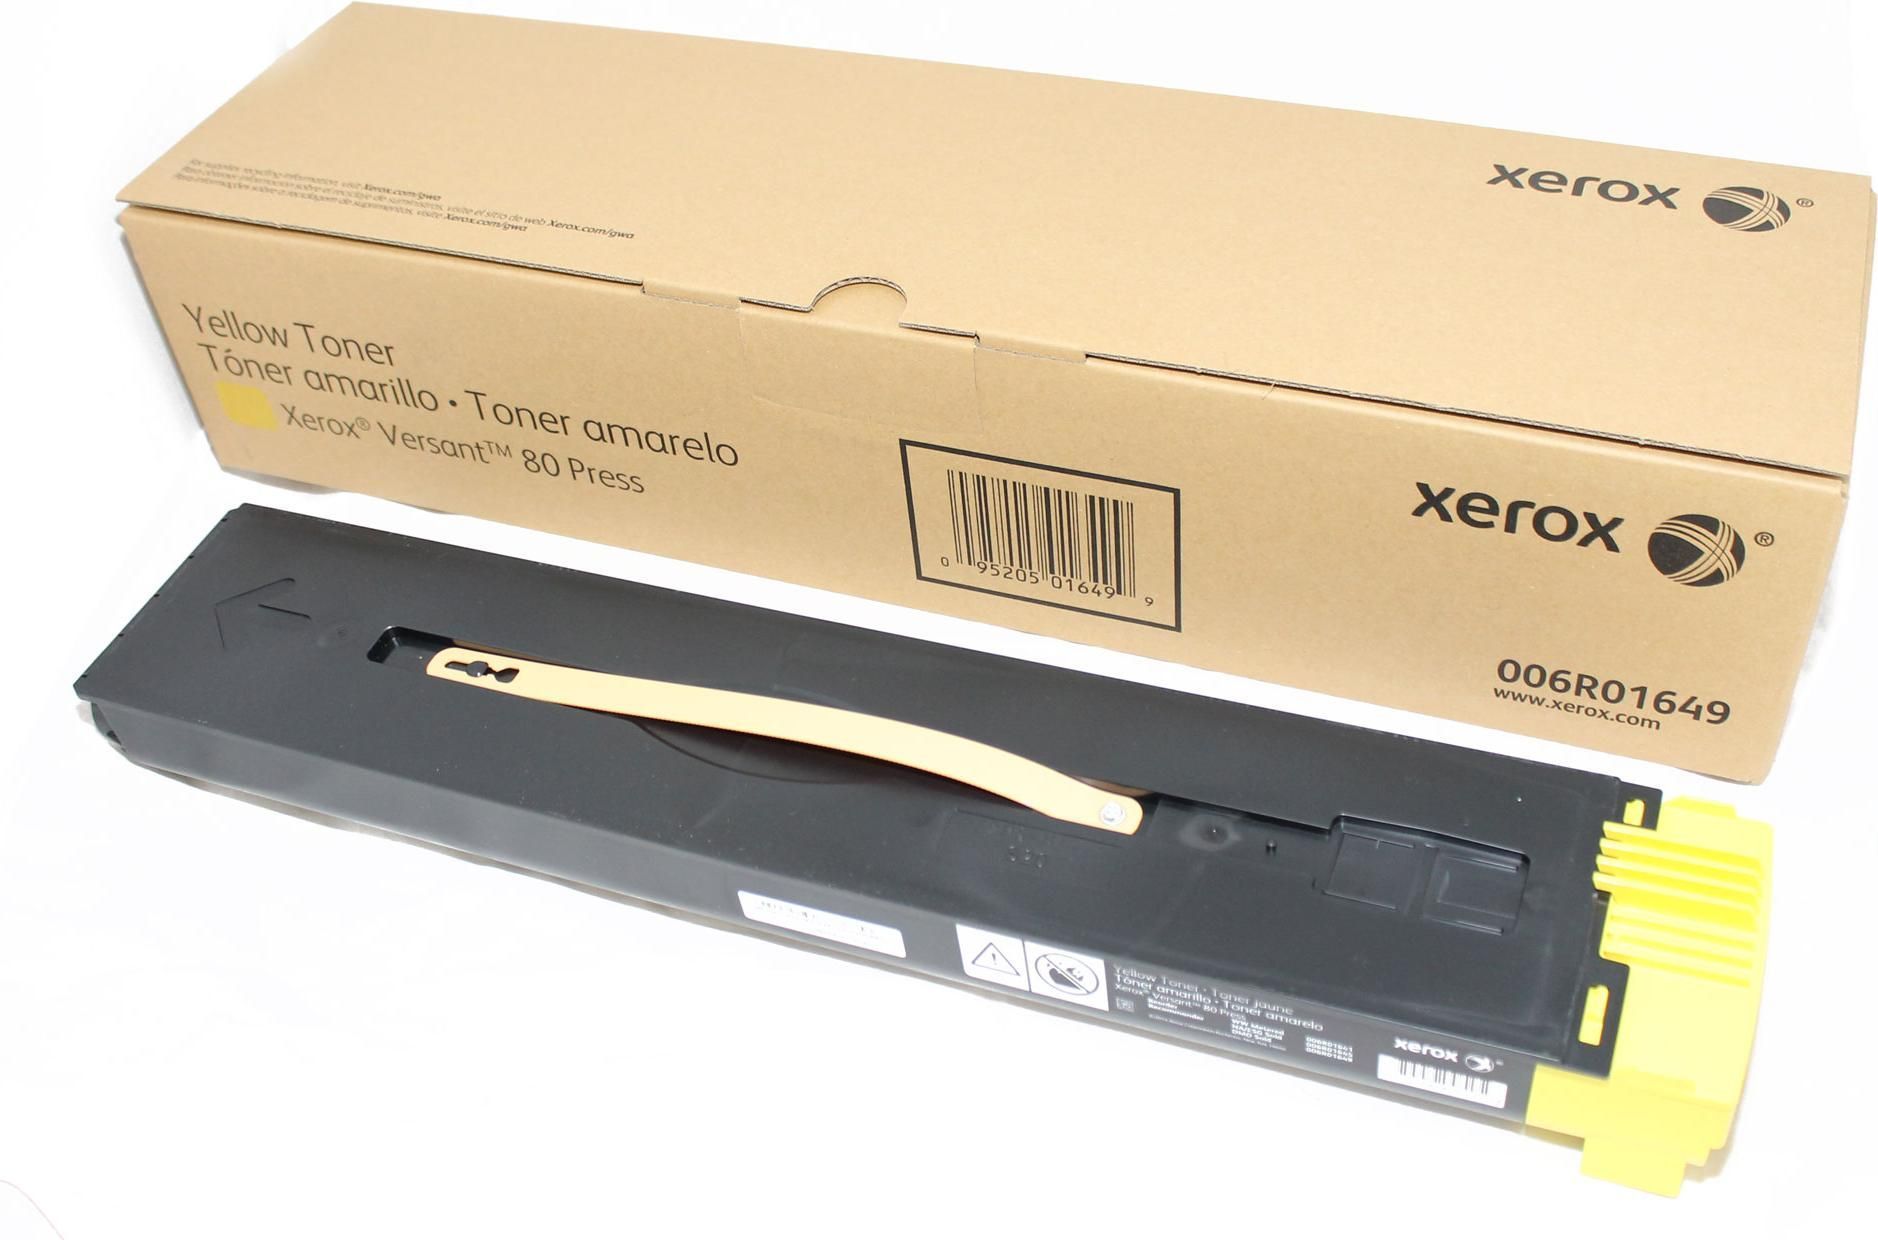 Тонер-картридж XEROX Versant 80/180 Press yellow (006R01649) картридж 006r01649 yellow для принтера ксерокс xerox versant 80